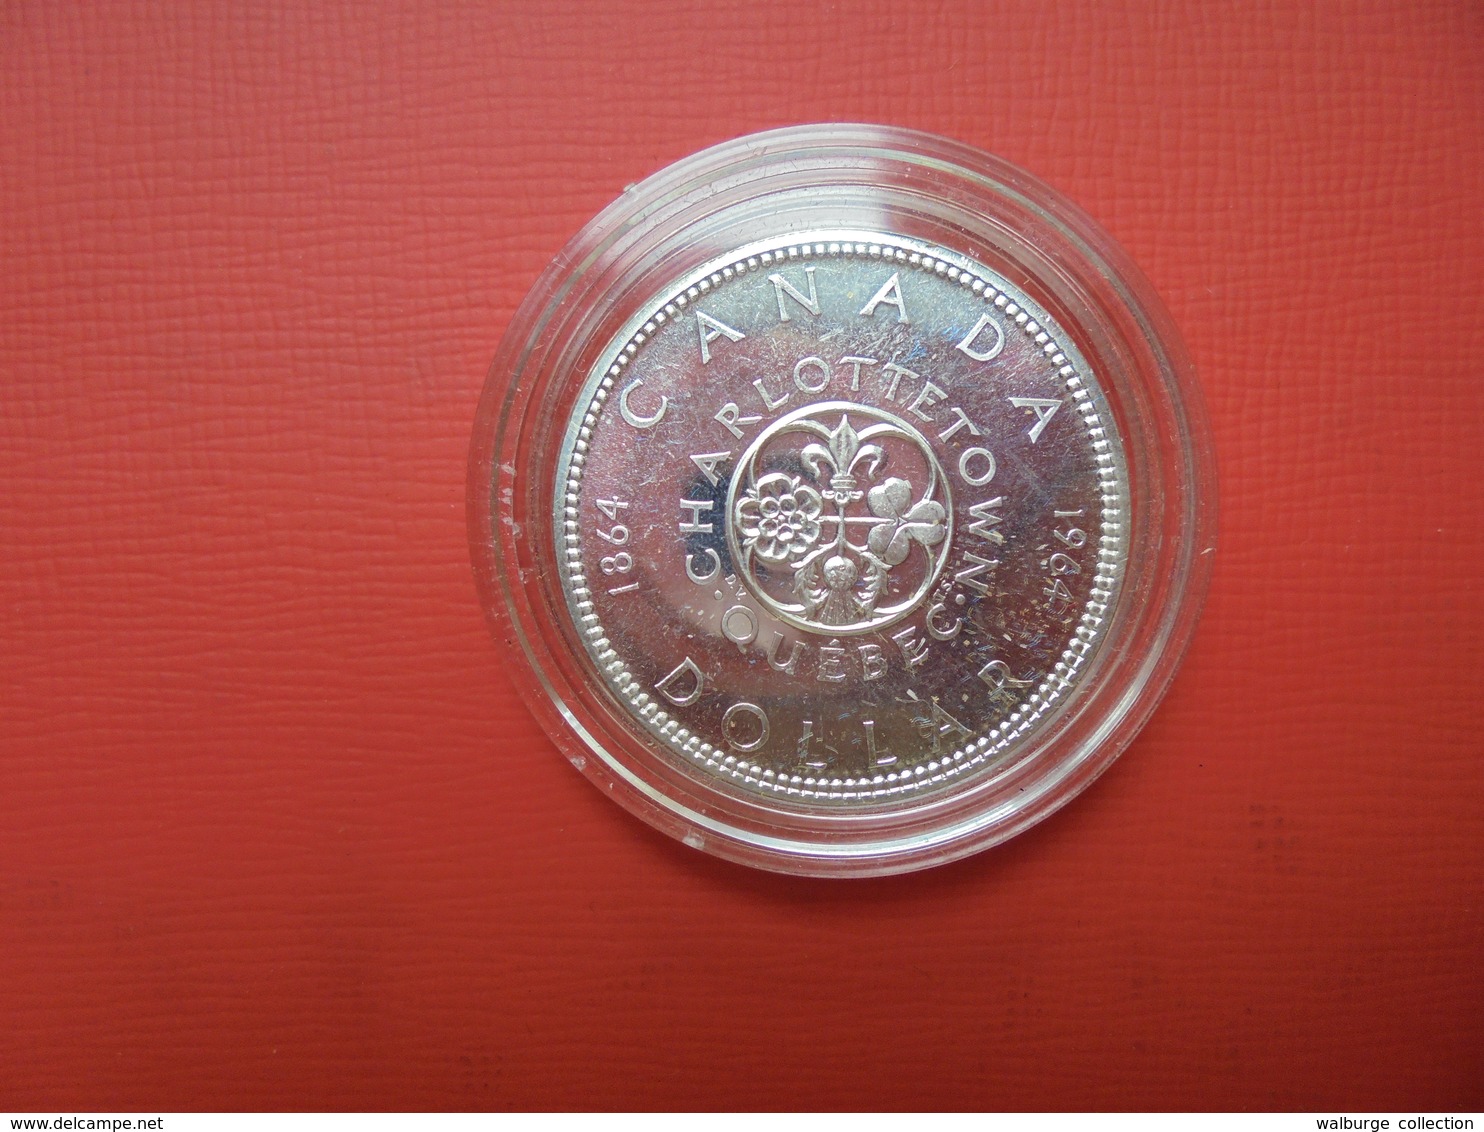 COLLECTION CANADA 47 MONNAIES ARGENT( 1 KILO 320 SOUS CAPSULES) ENTRE 1939 ET 1997. - Lots & Kiloware - Coins